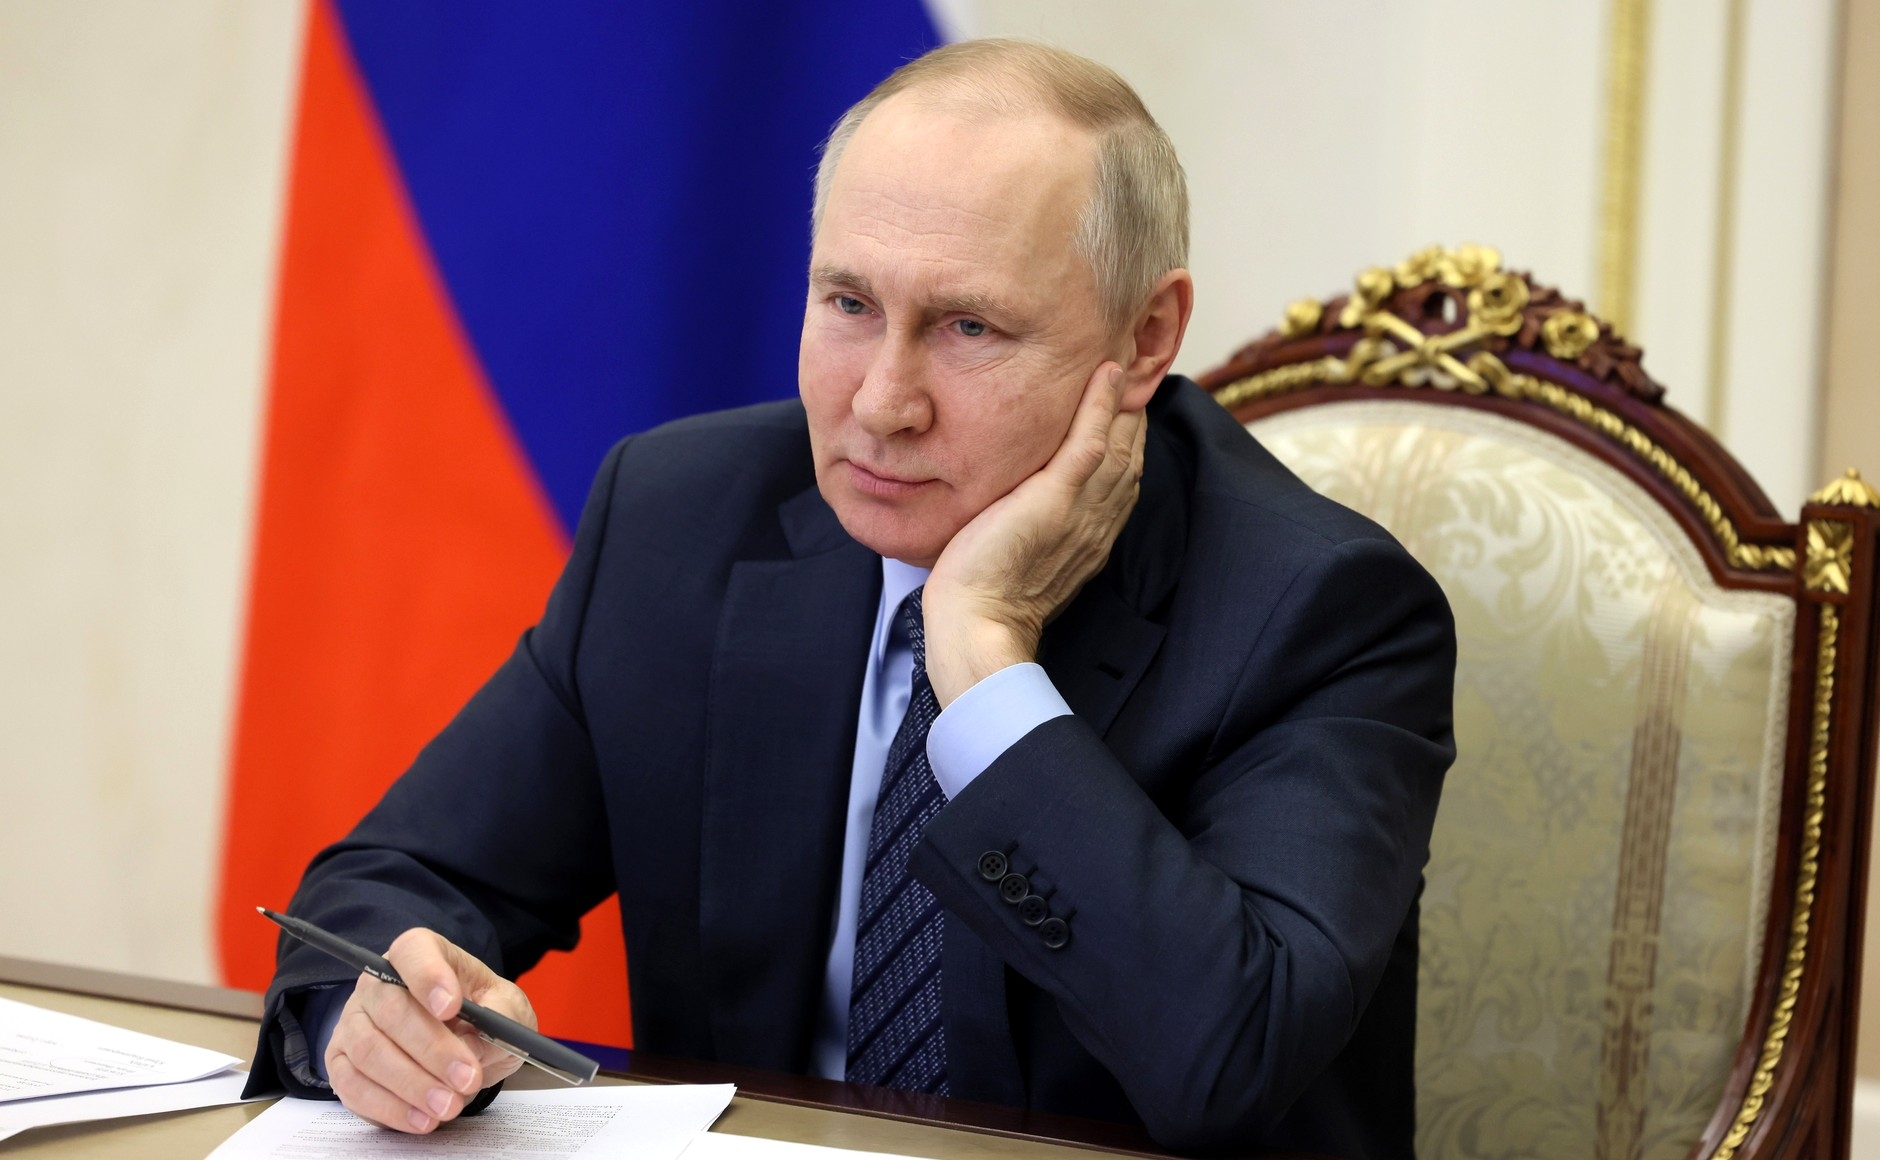 Дата прямой линии с Путиным находится в стадии обсуждения — Песков